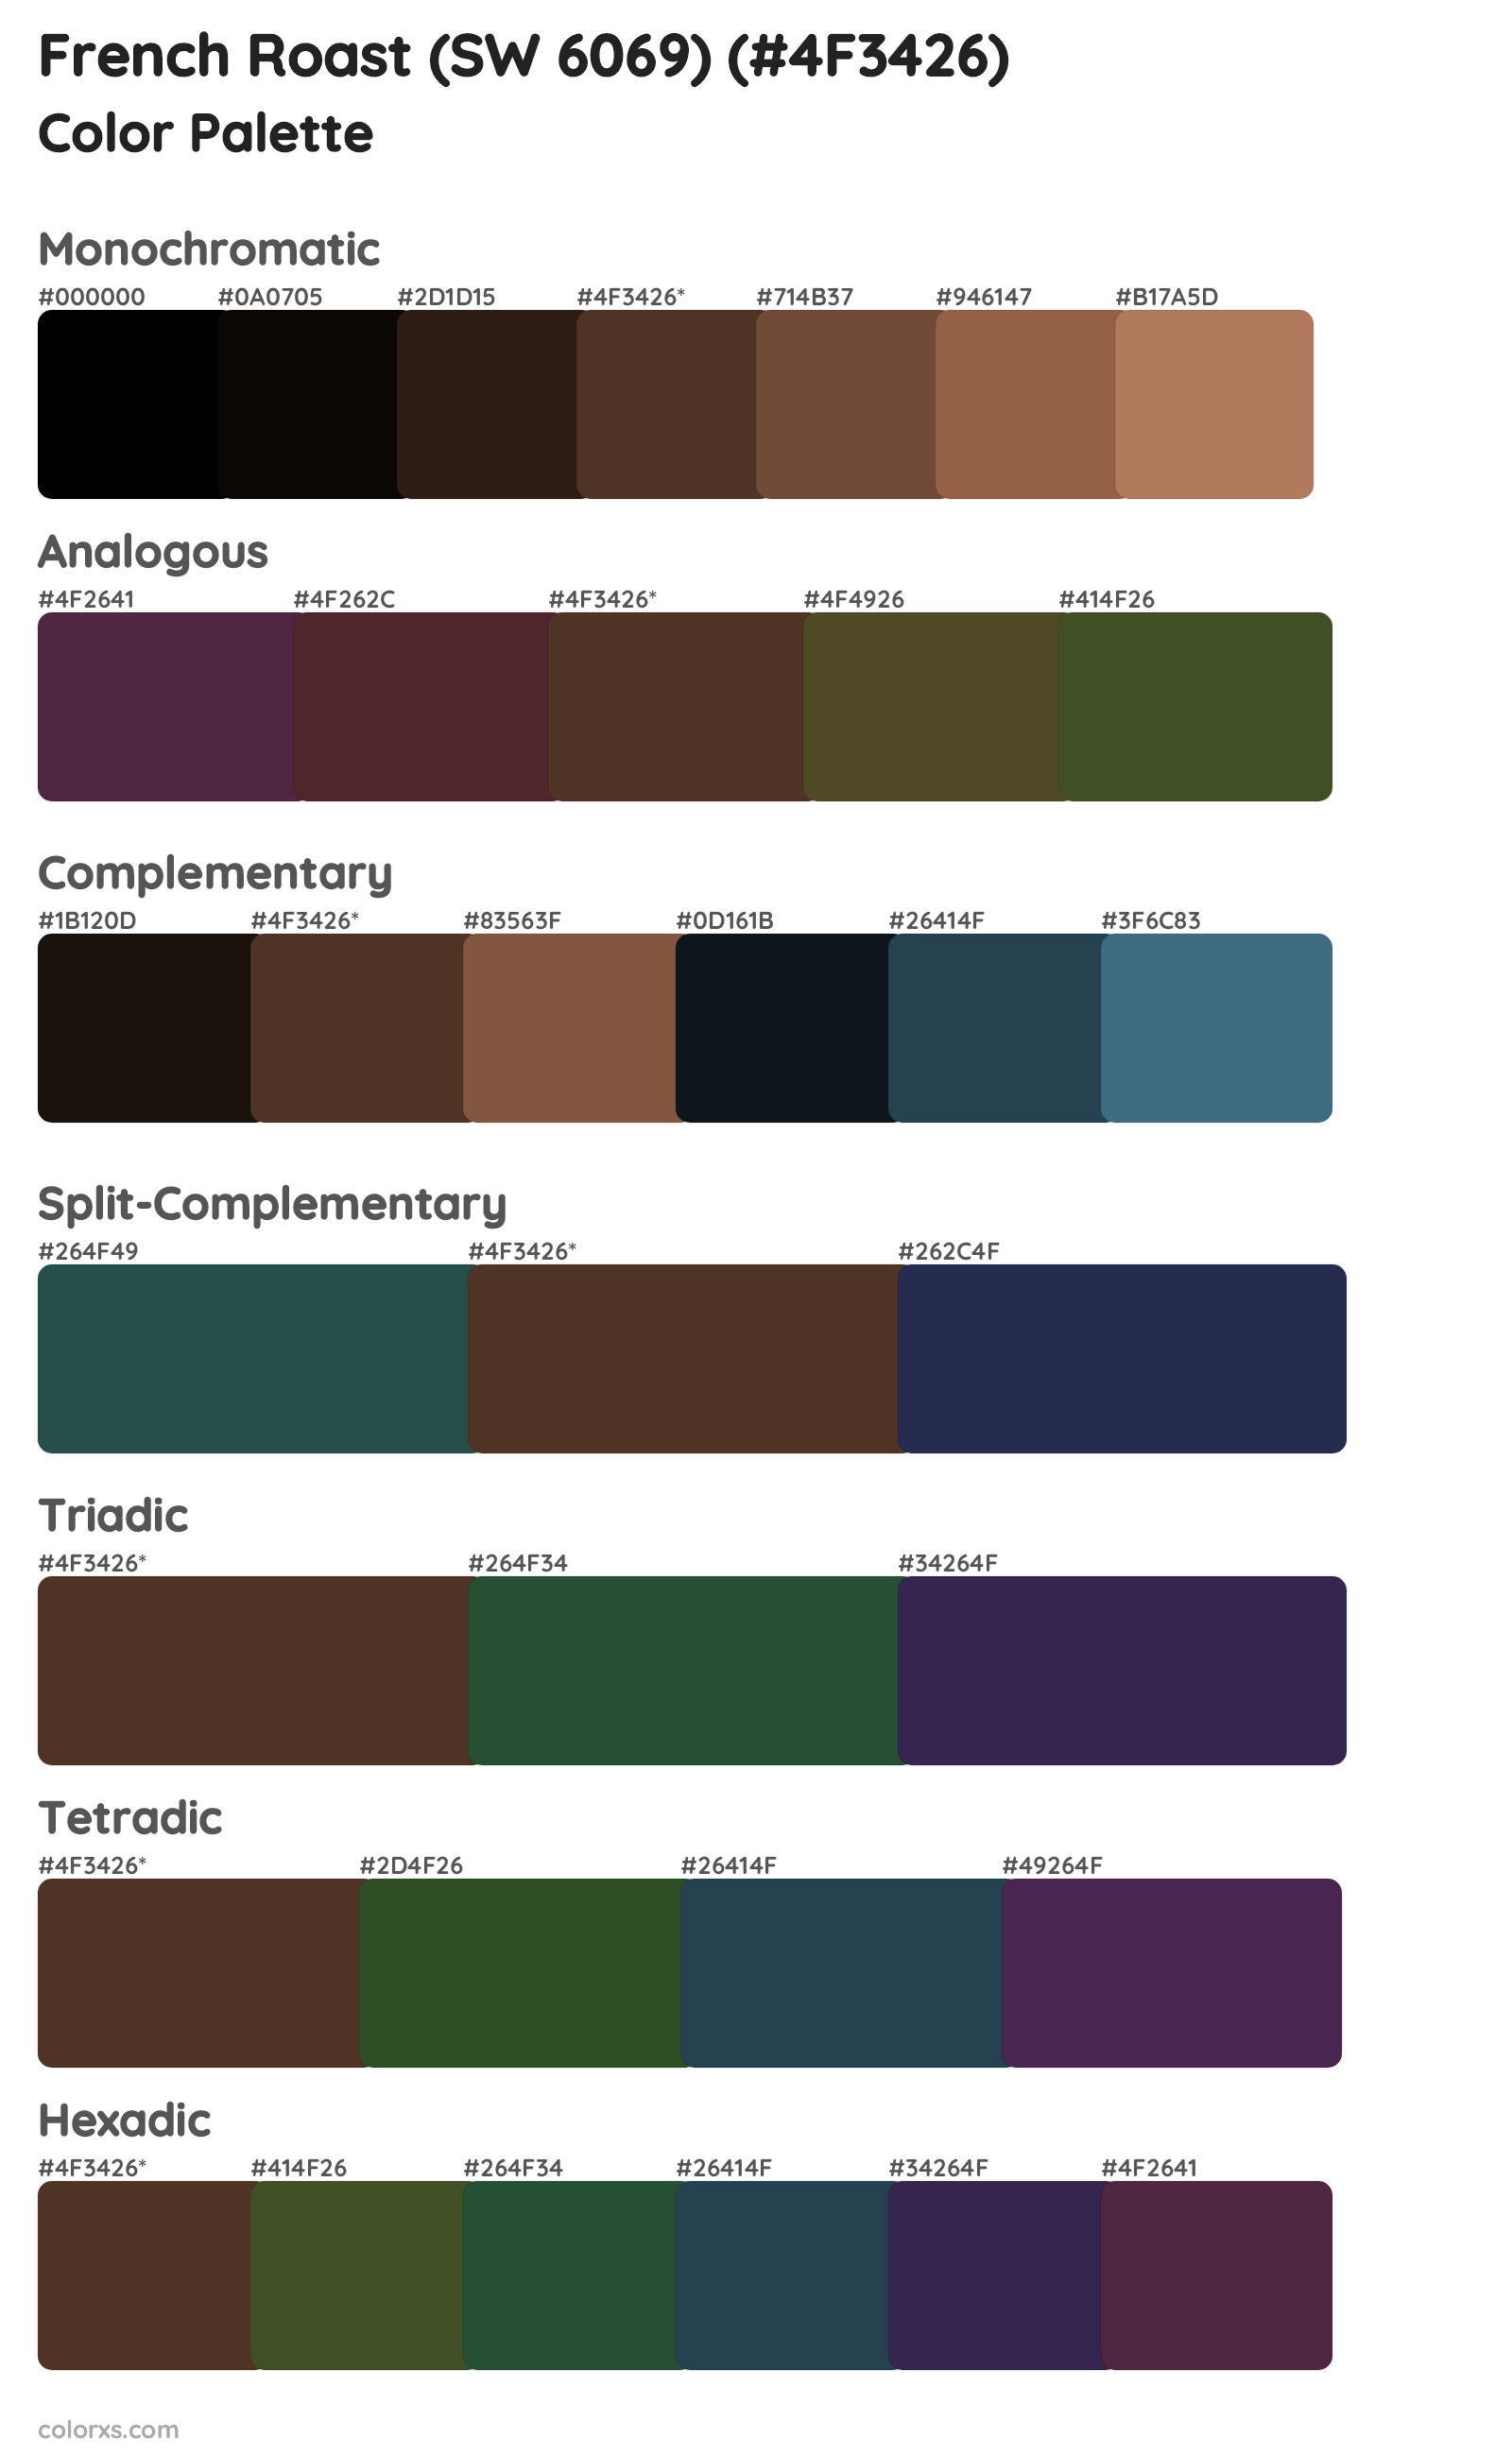 French Roast (SW 6069) Color Scheme Palettes